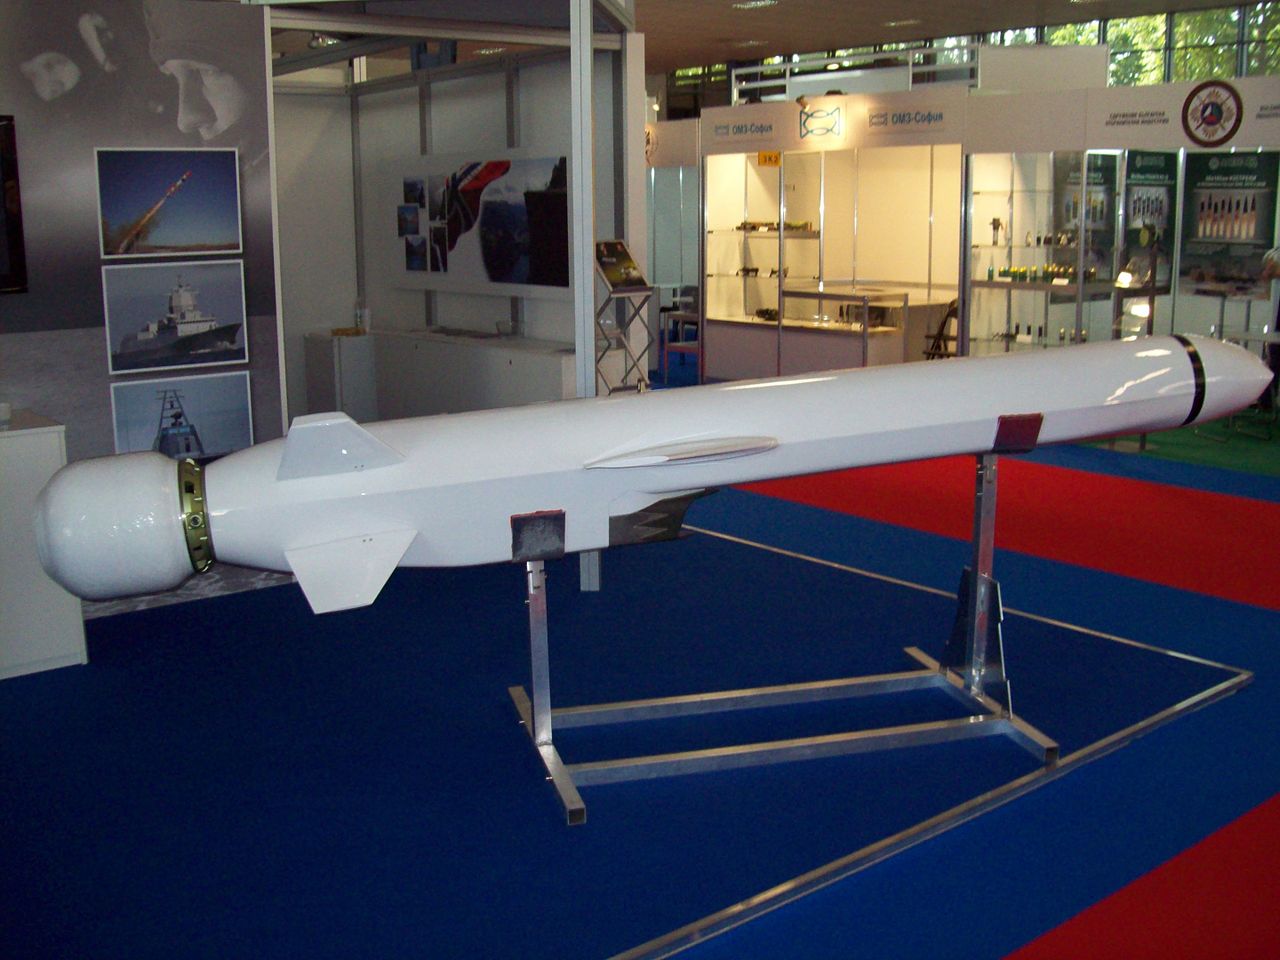 Протикорабельна ракета Naval Strike Missile (NSM) компанії Kongsberg. Виставка Хемус 2010, Міжнародний ярмарок, Пловдив. Фото з відкритих джерел